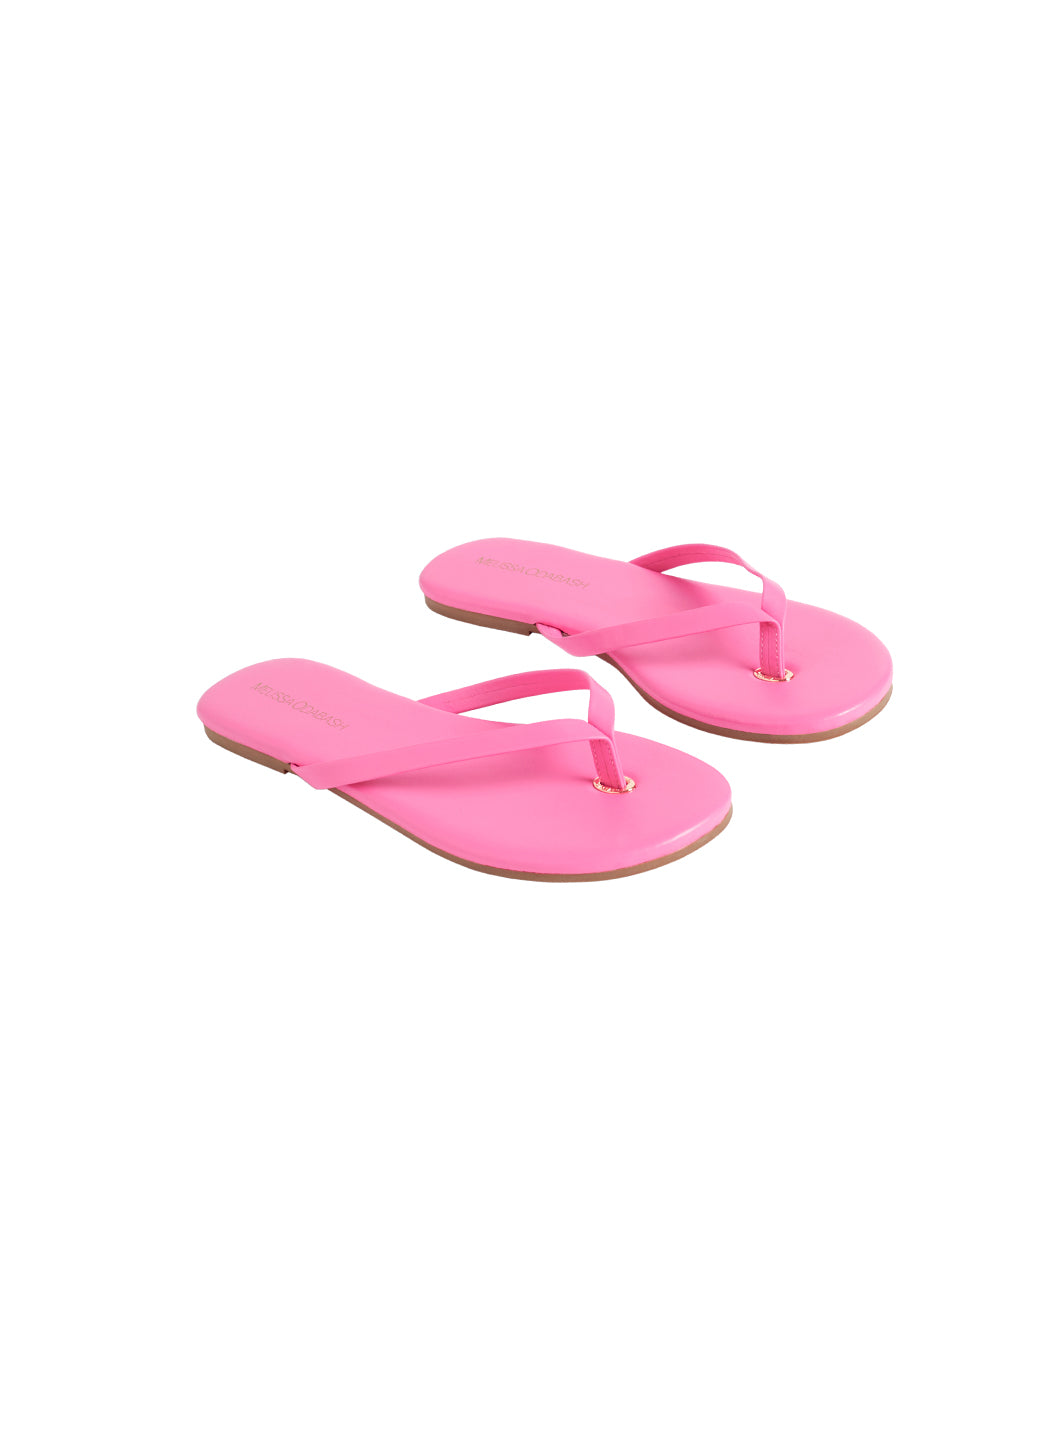 Women's Flip Flops - Hot Pink